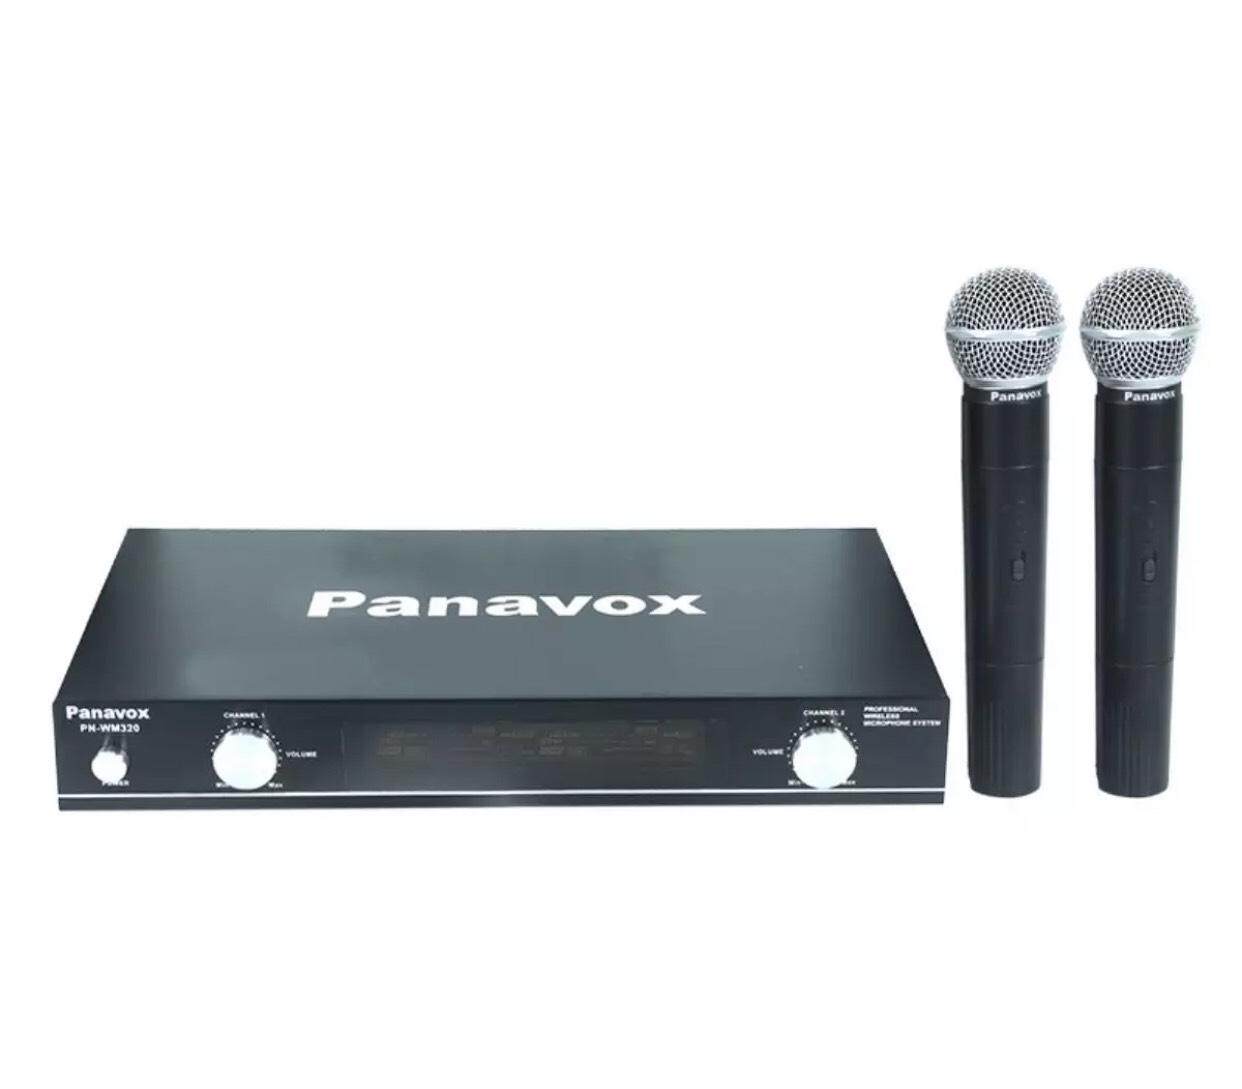 ไมโครโฟนไร้สาย PANAVOX รุ่น PN-WM320 ไมค์ลอย เครื่องเล่นซีดี-ดีวีดีและบลูเรย์ ชุดโฮมเธียเตอร์ ทีวี ไมโครโฟน และ อุปกรณ์เสริม TV ลำโพง และ วิทยุ เครื่องเสียง